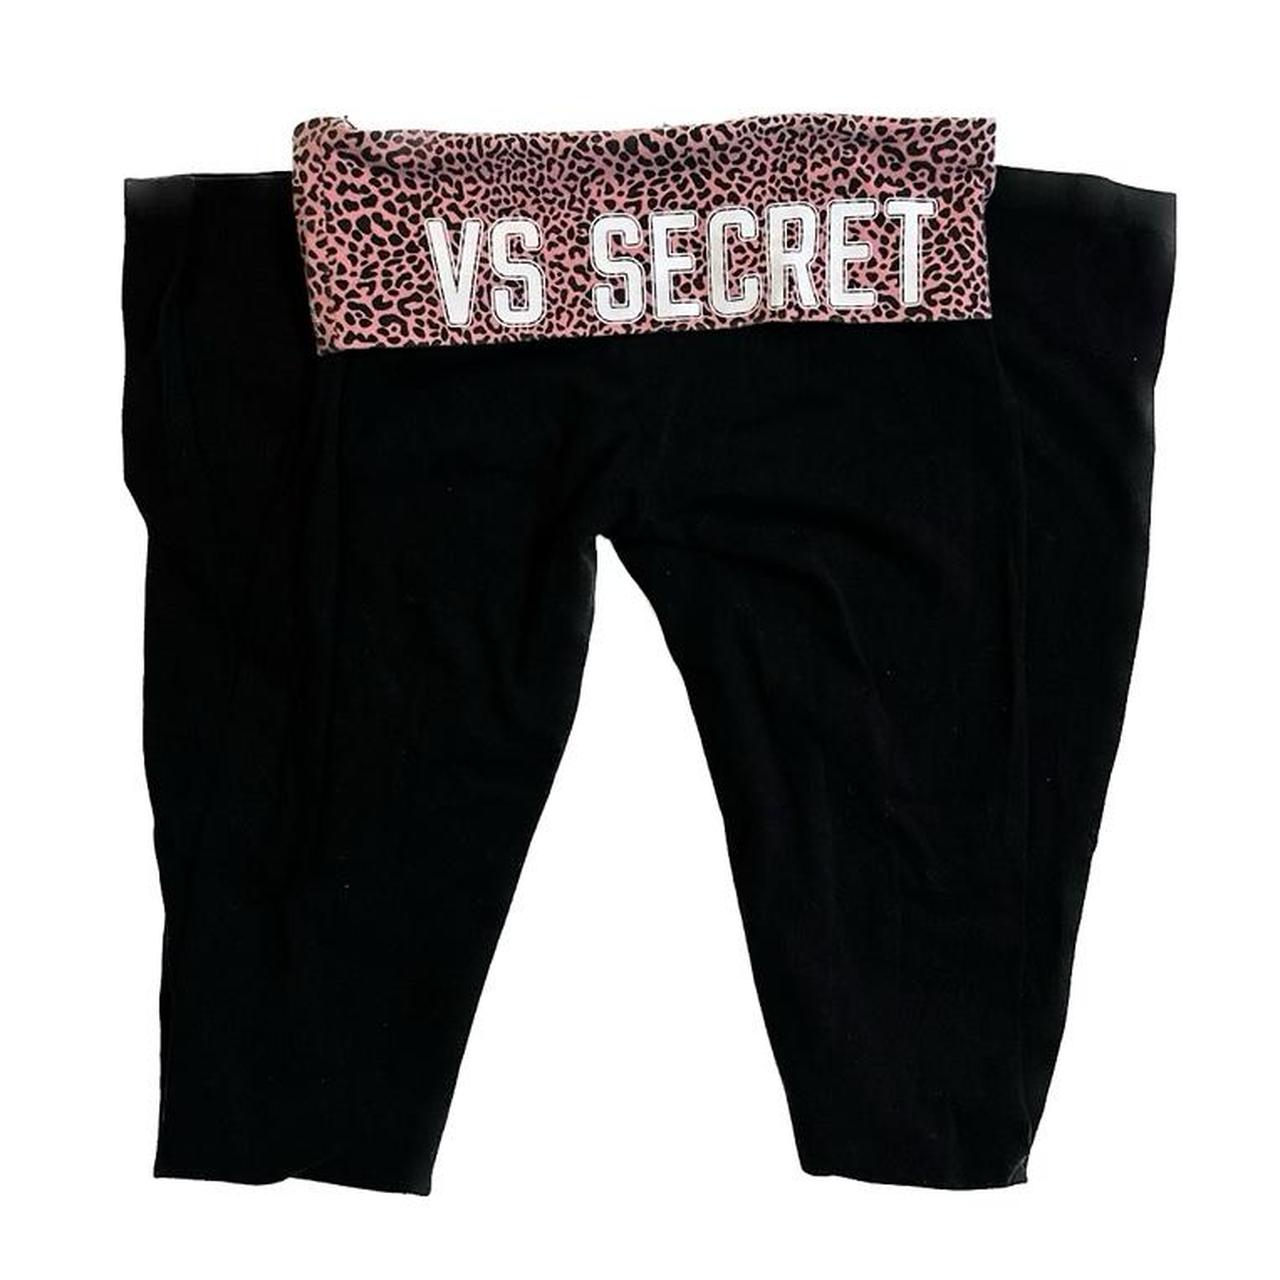 Victorias Secret Pink fold over yoga pants nfl - Depop